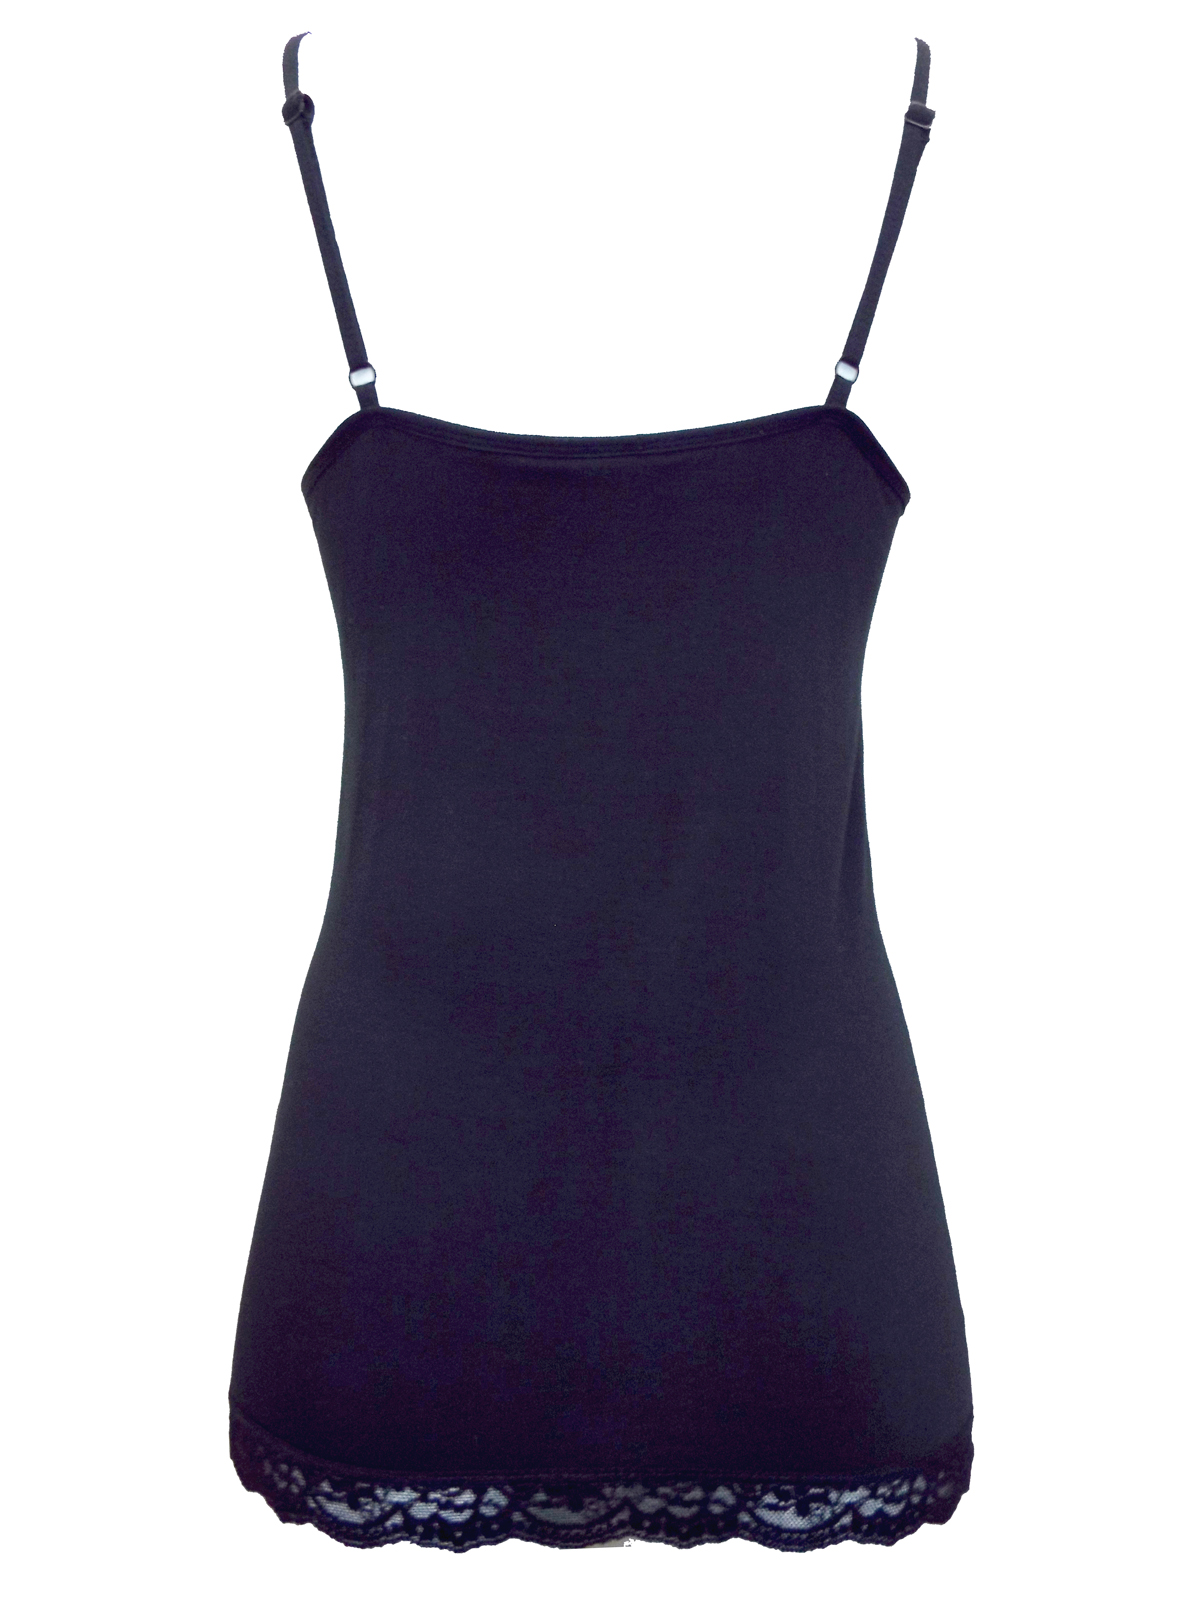 Marks and Spencer - - M&5 BLACK Lace Trim Secret Support Vest Top ...